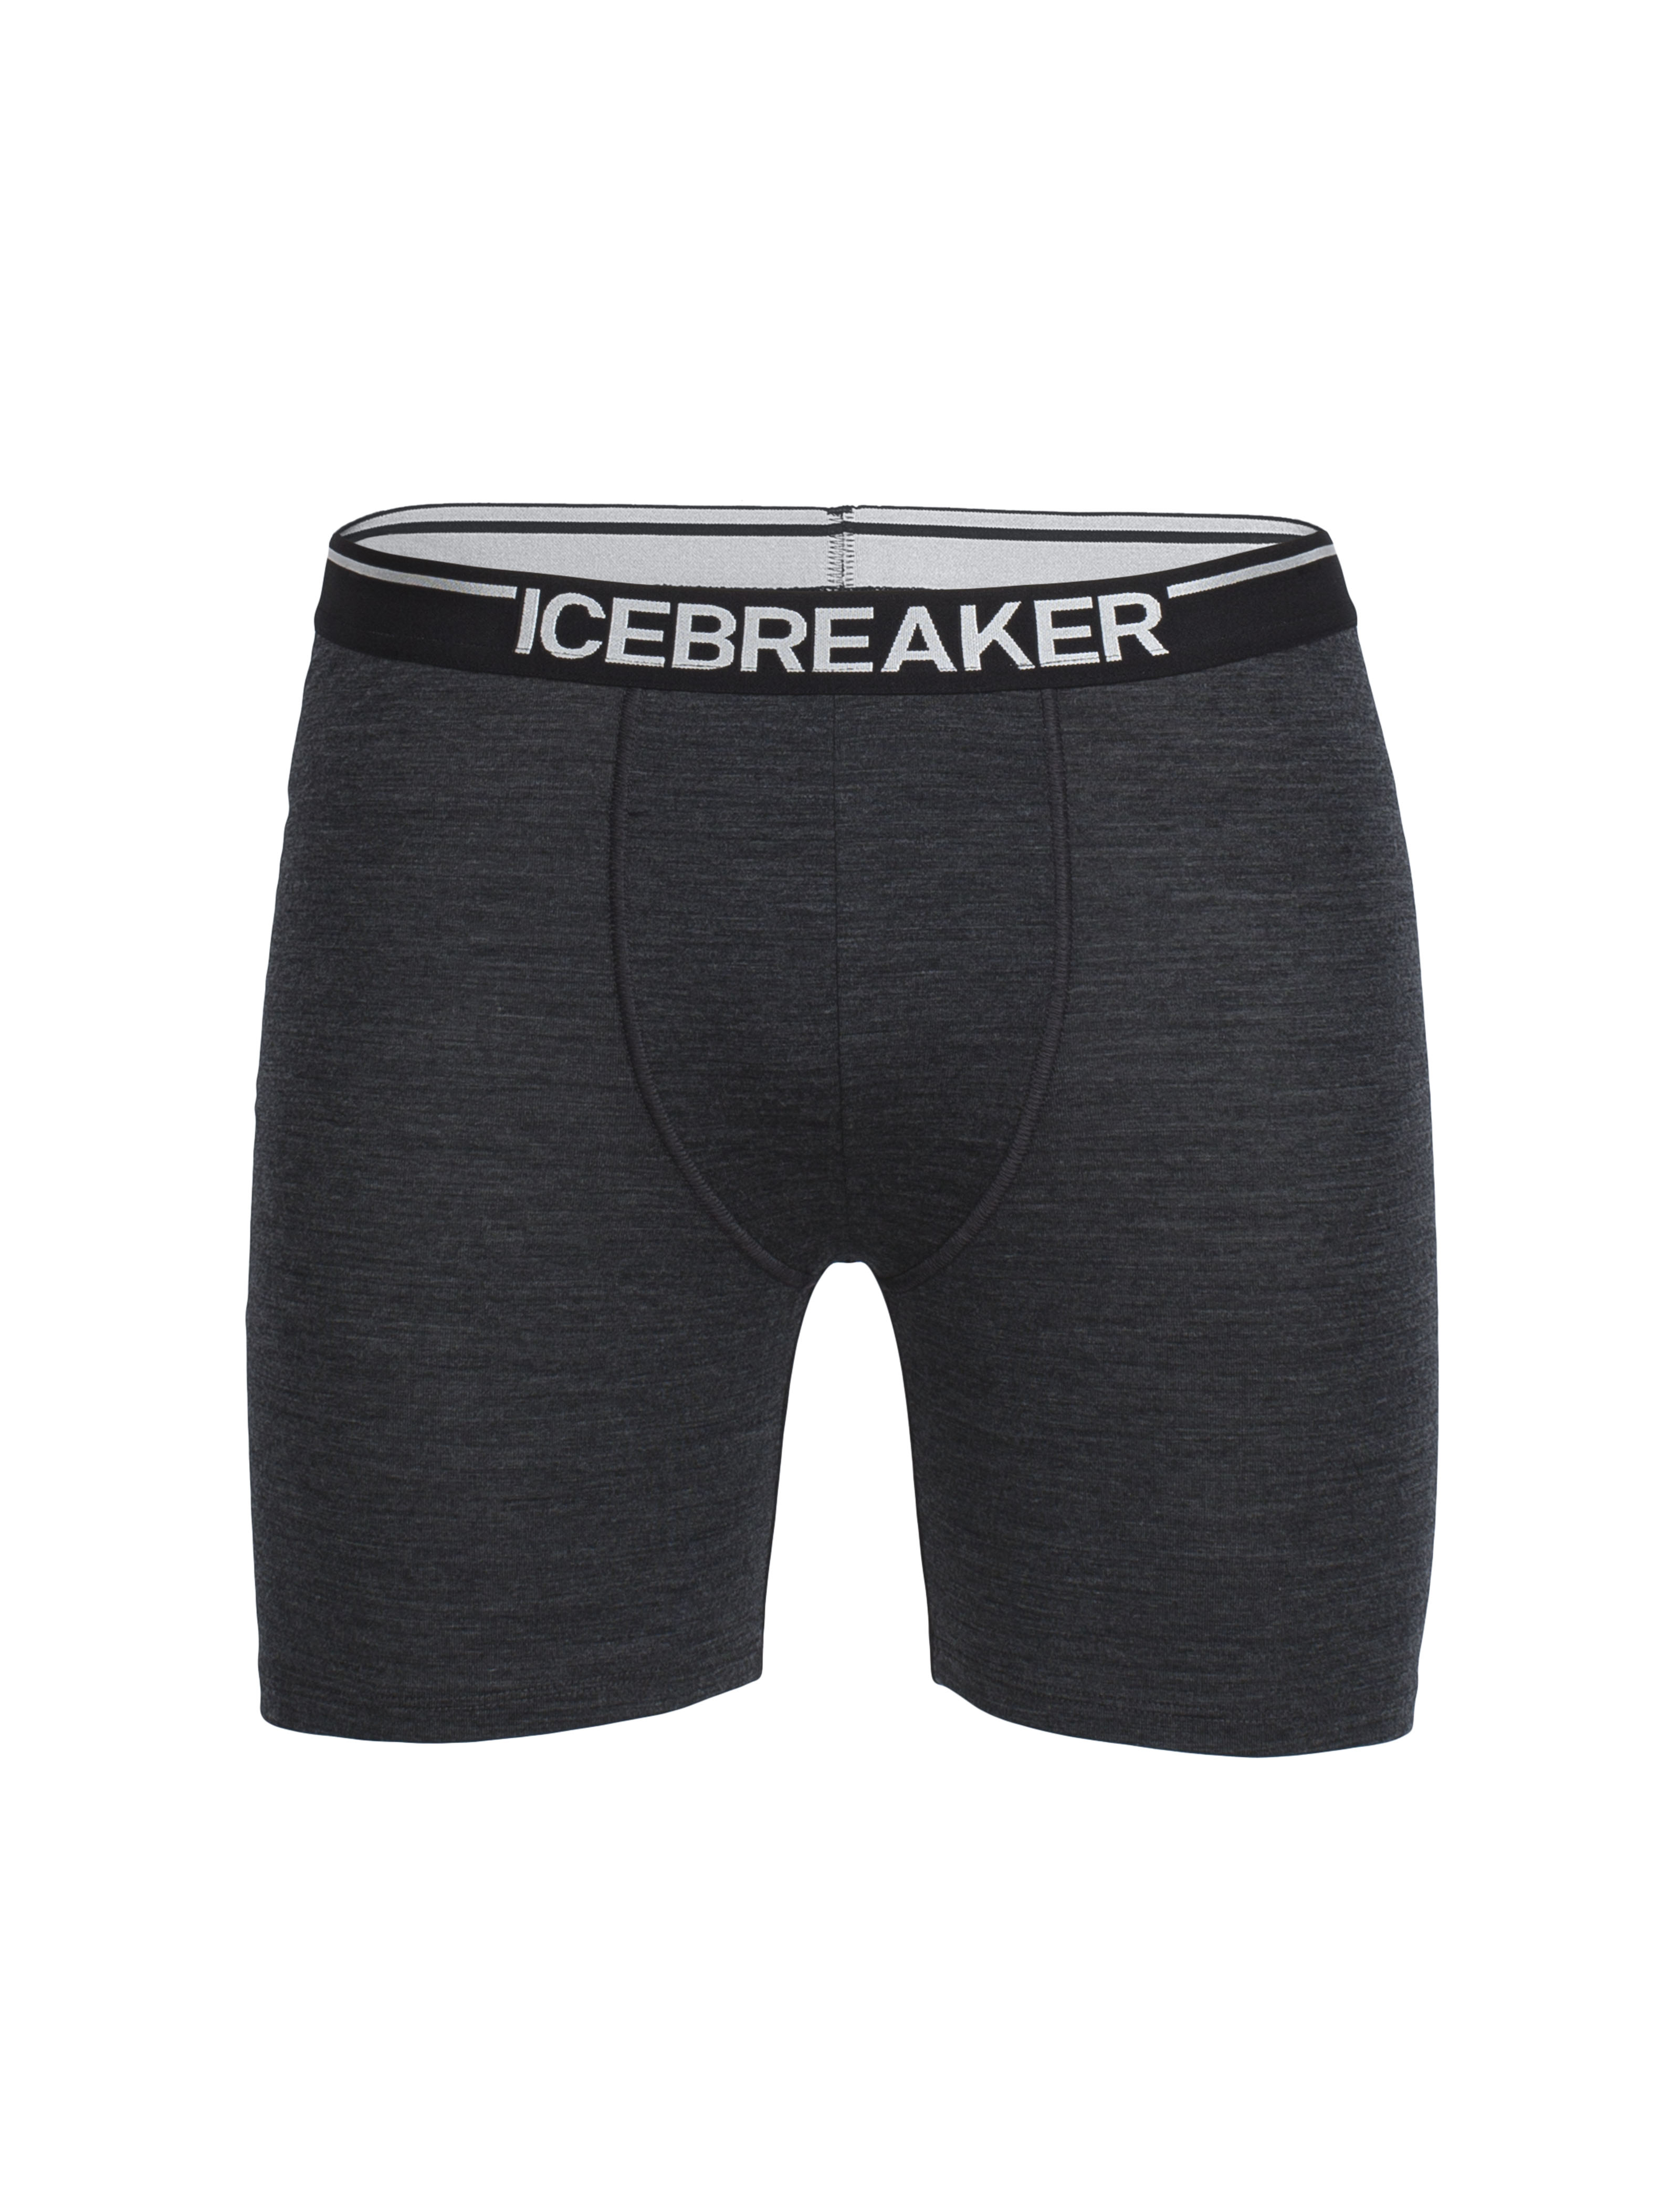 Icebreaker "Mens Anatomica Long Boxers" - grau